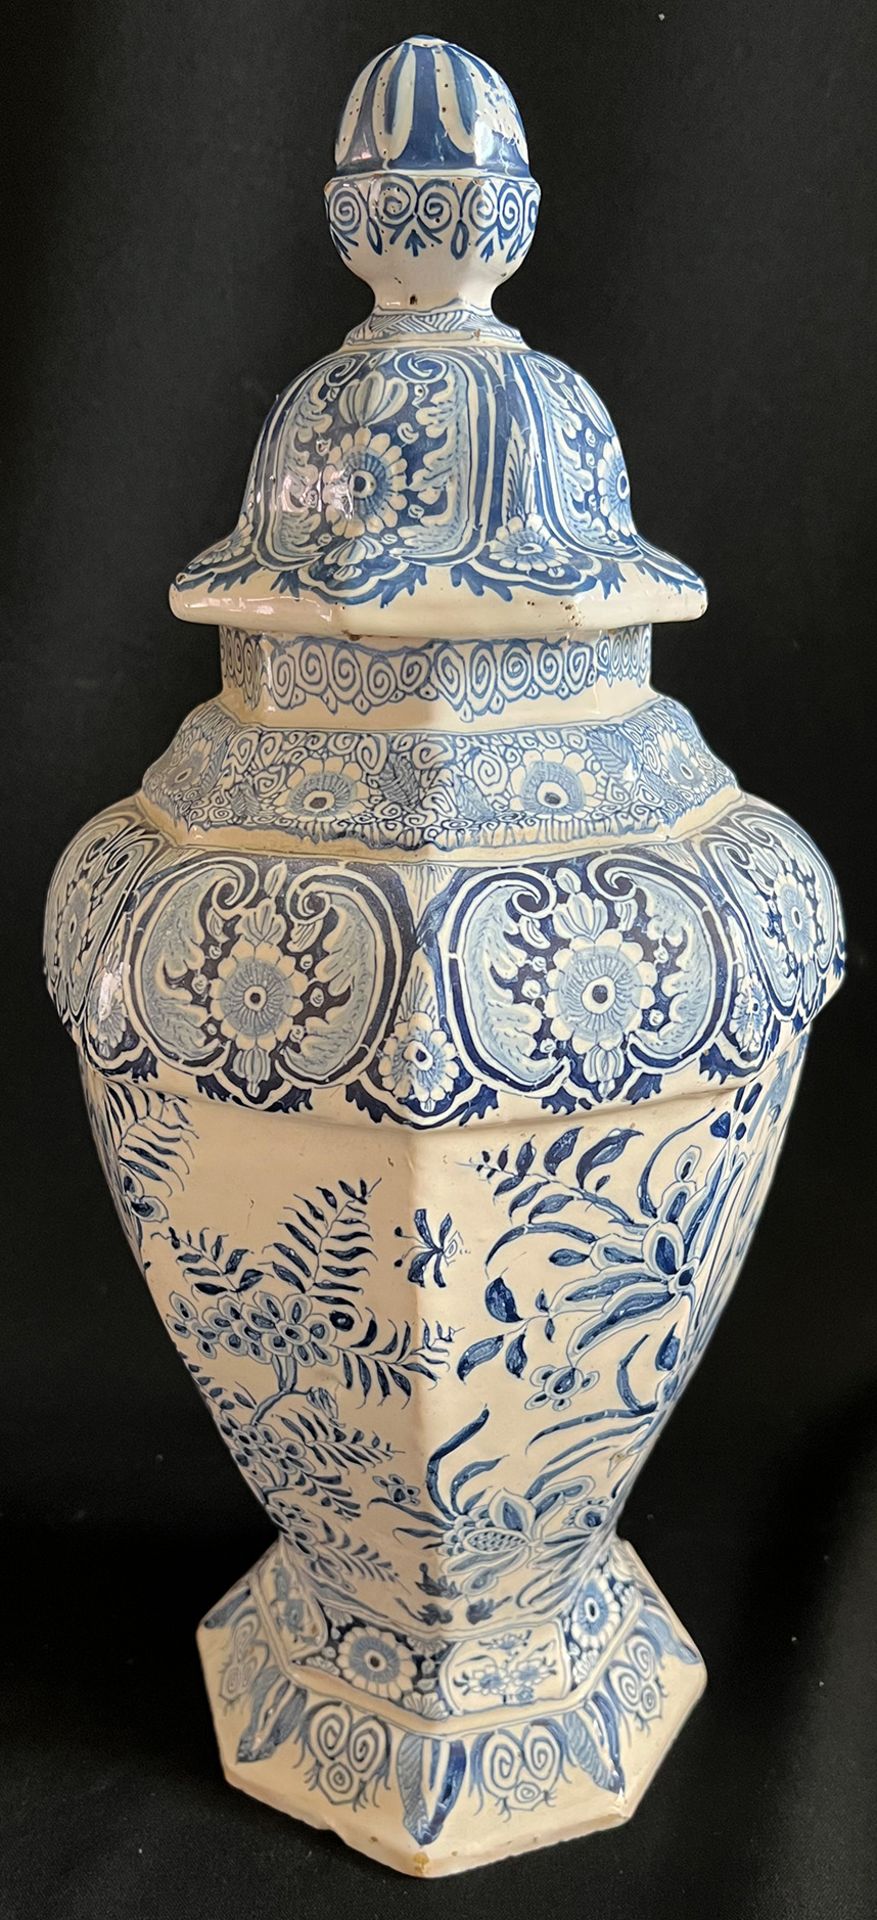 2 Deckelvasen / two vases with lid, Delft, 18. Jh., Blumen- und Vogeldekor, Altersspuren, - Bild 4 aus 8